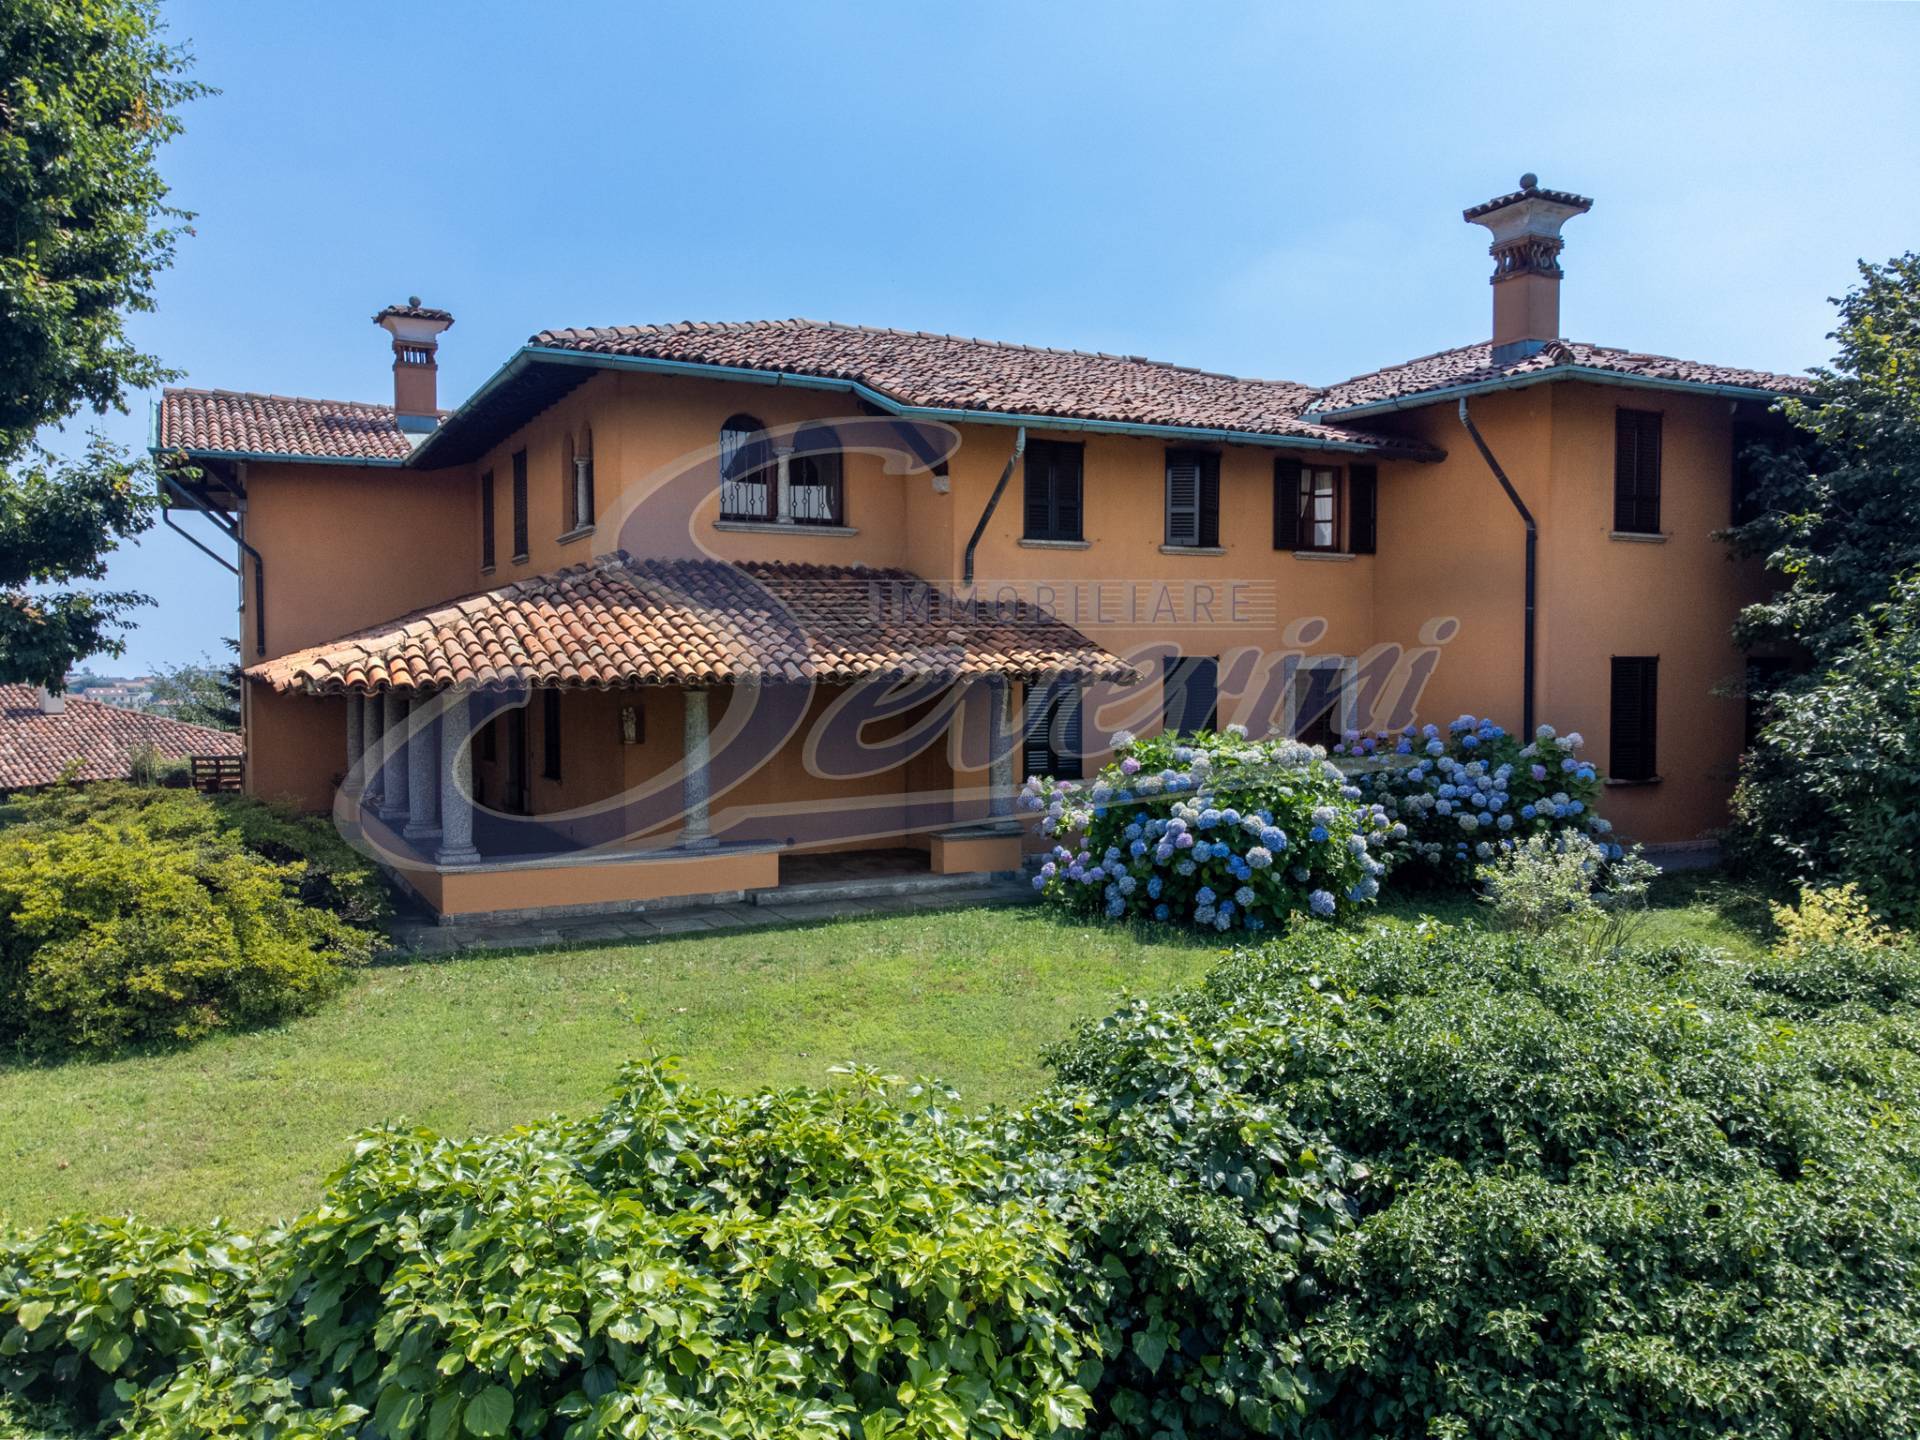 Villa in affitto a Cantù, 5 locali, prezzo € 3.000 | CambioCasa.it